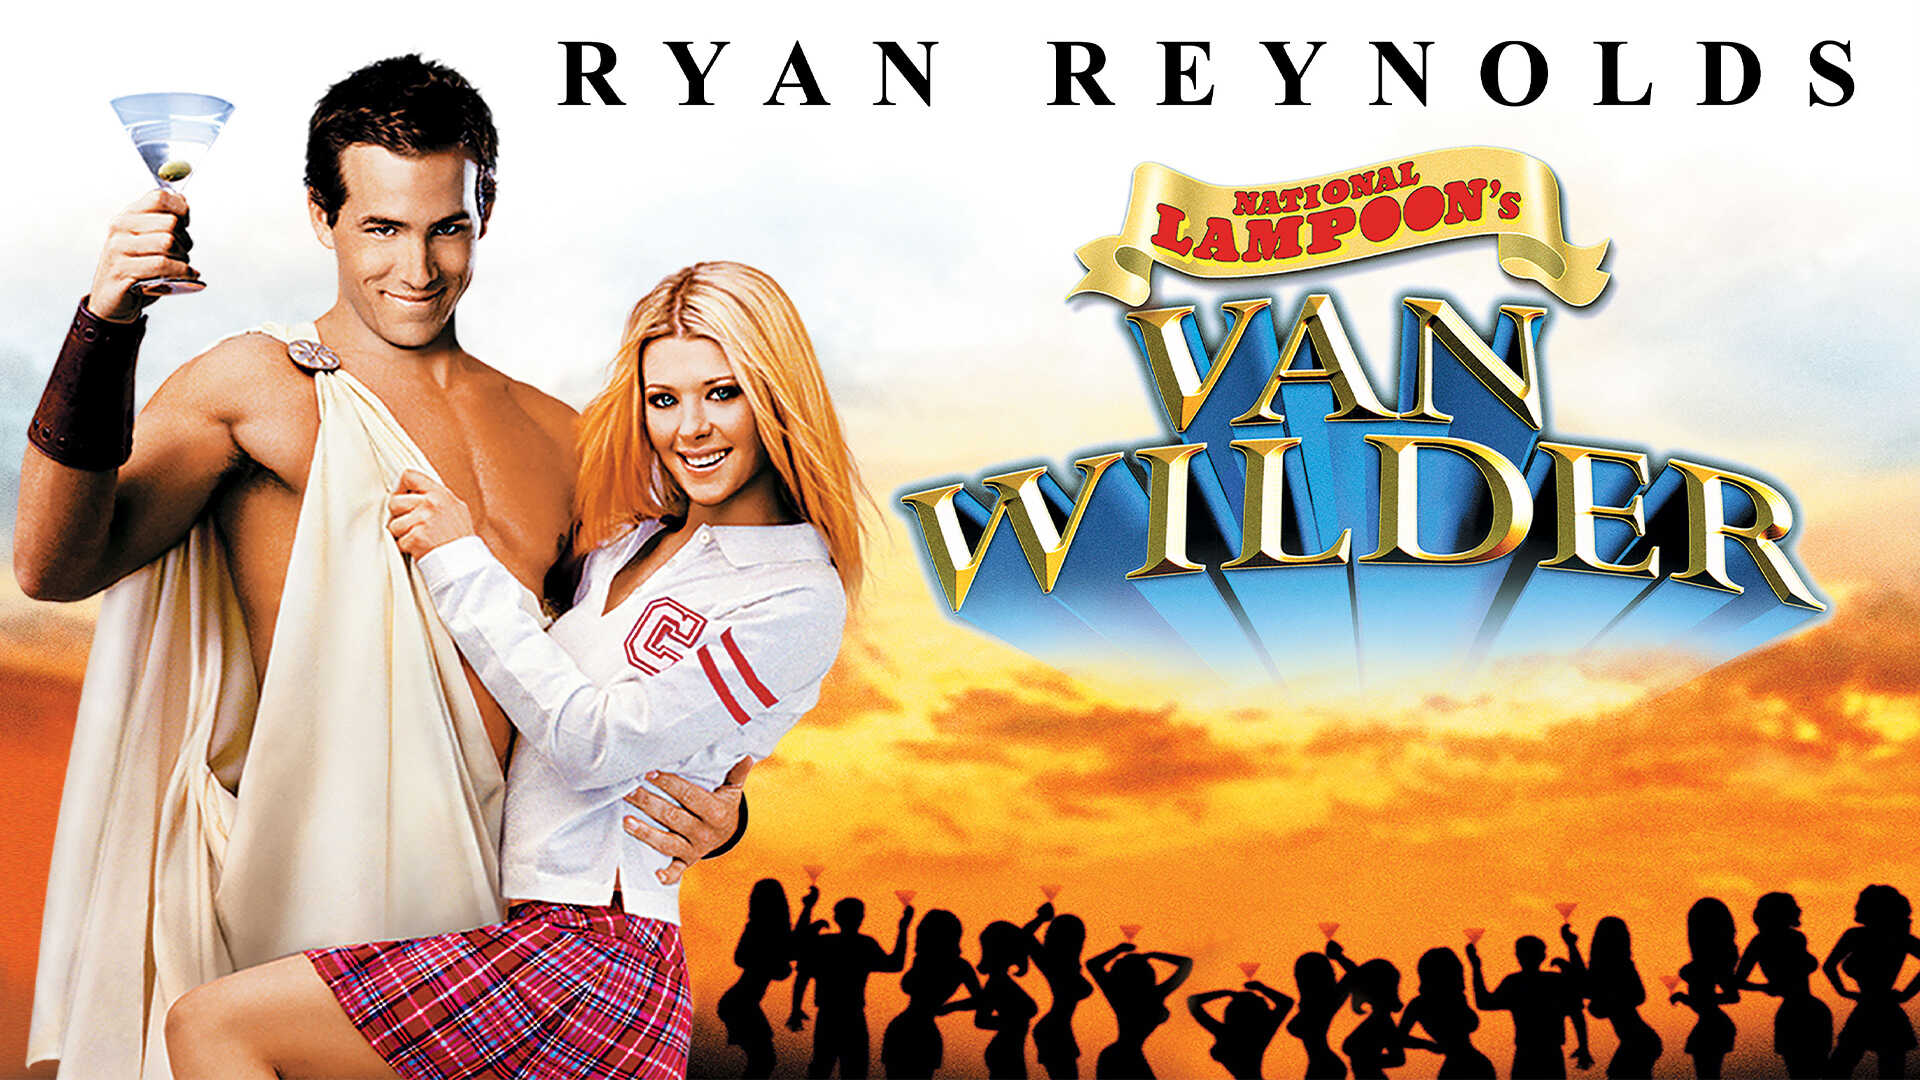 Блондинка в шоколаде 2006. Van Wild. Party van. Van Wilder collection DVD Cover. Van Wilder collection DVD Covert.